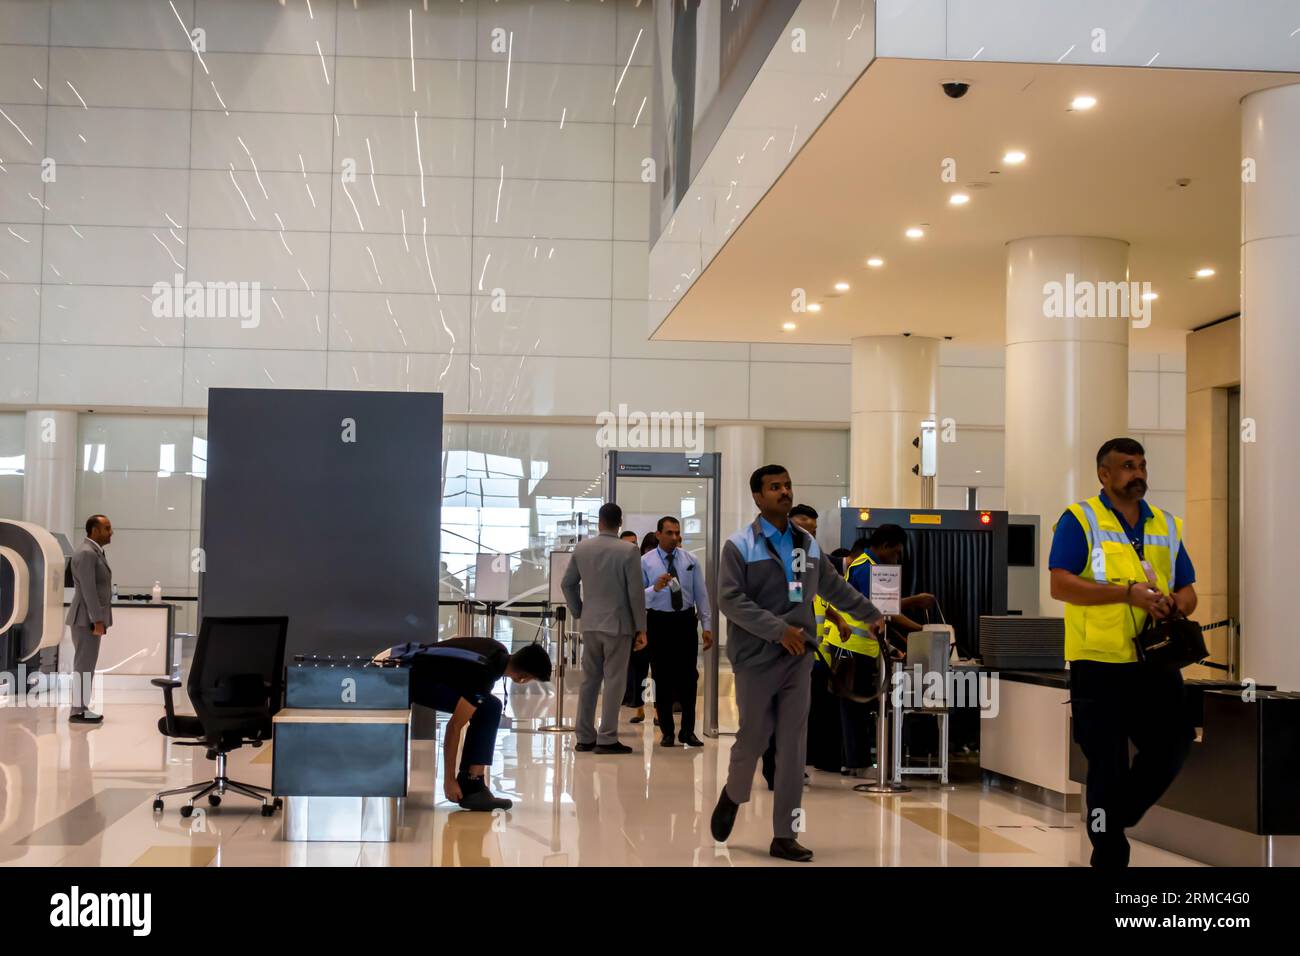 Sicherheitskontrolle am Flughafen. Sicherheitskontrolle von Handgepäck vor dem Gate-Eingang, Dubai Airport Middle East Gepäckkontrolle am Flughafen. Stockfoto